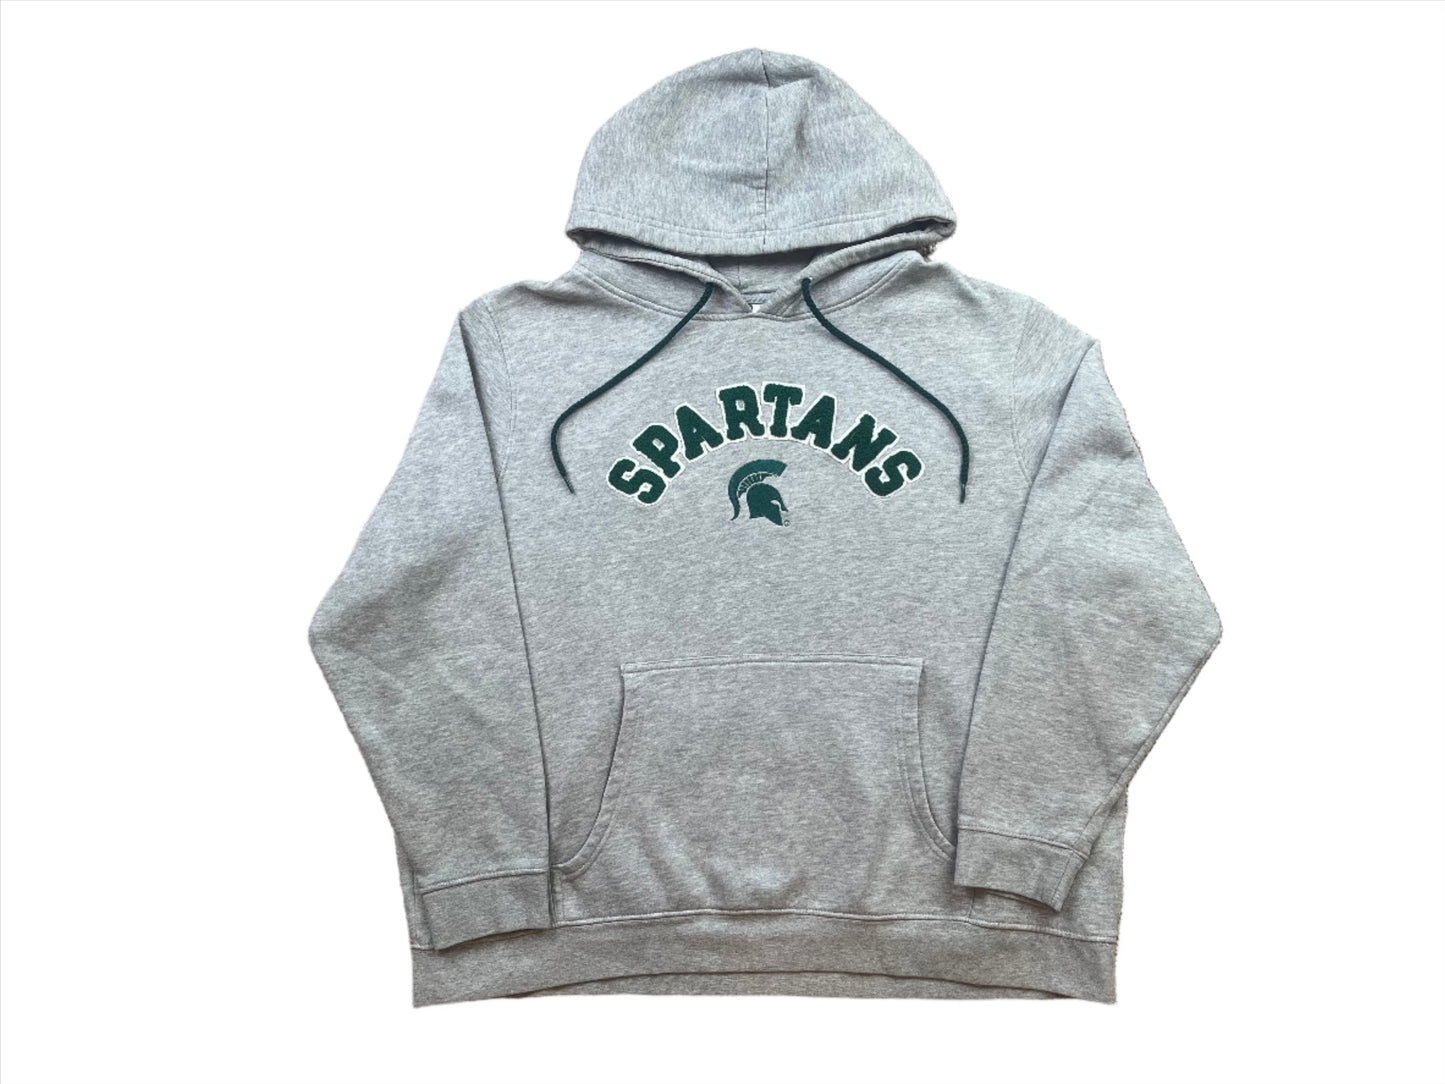 Michigan State Spartans Embroidered Sweatshirt